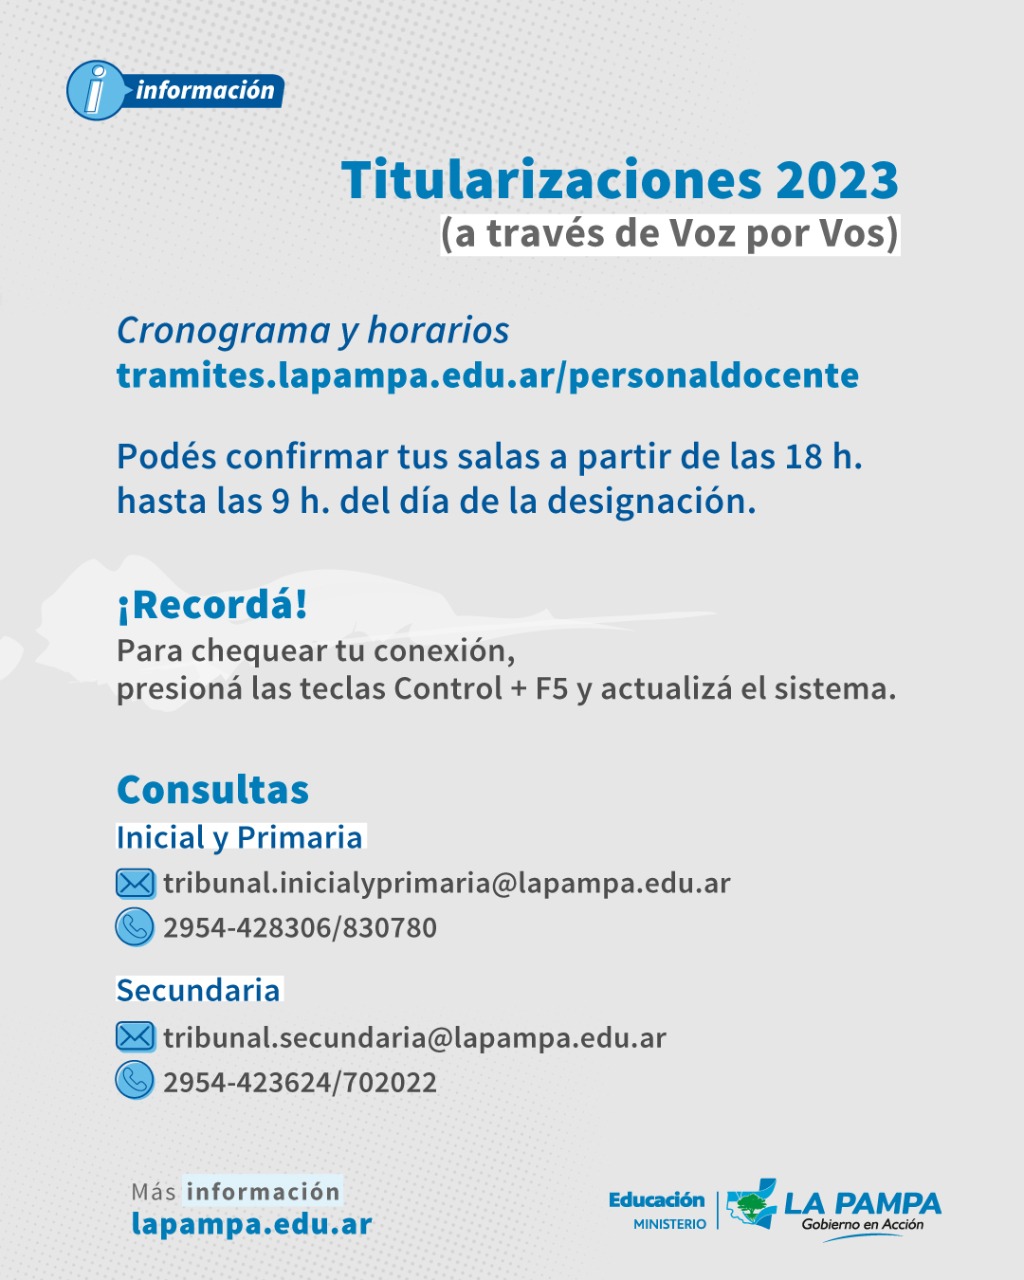 Titularizaciones docentes de Secundaria: publican vacantes, cronograma y horarios 